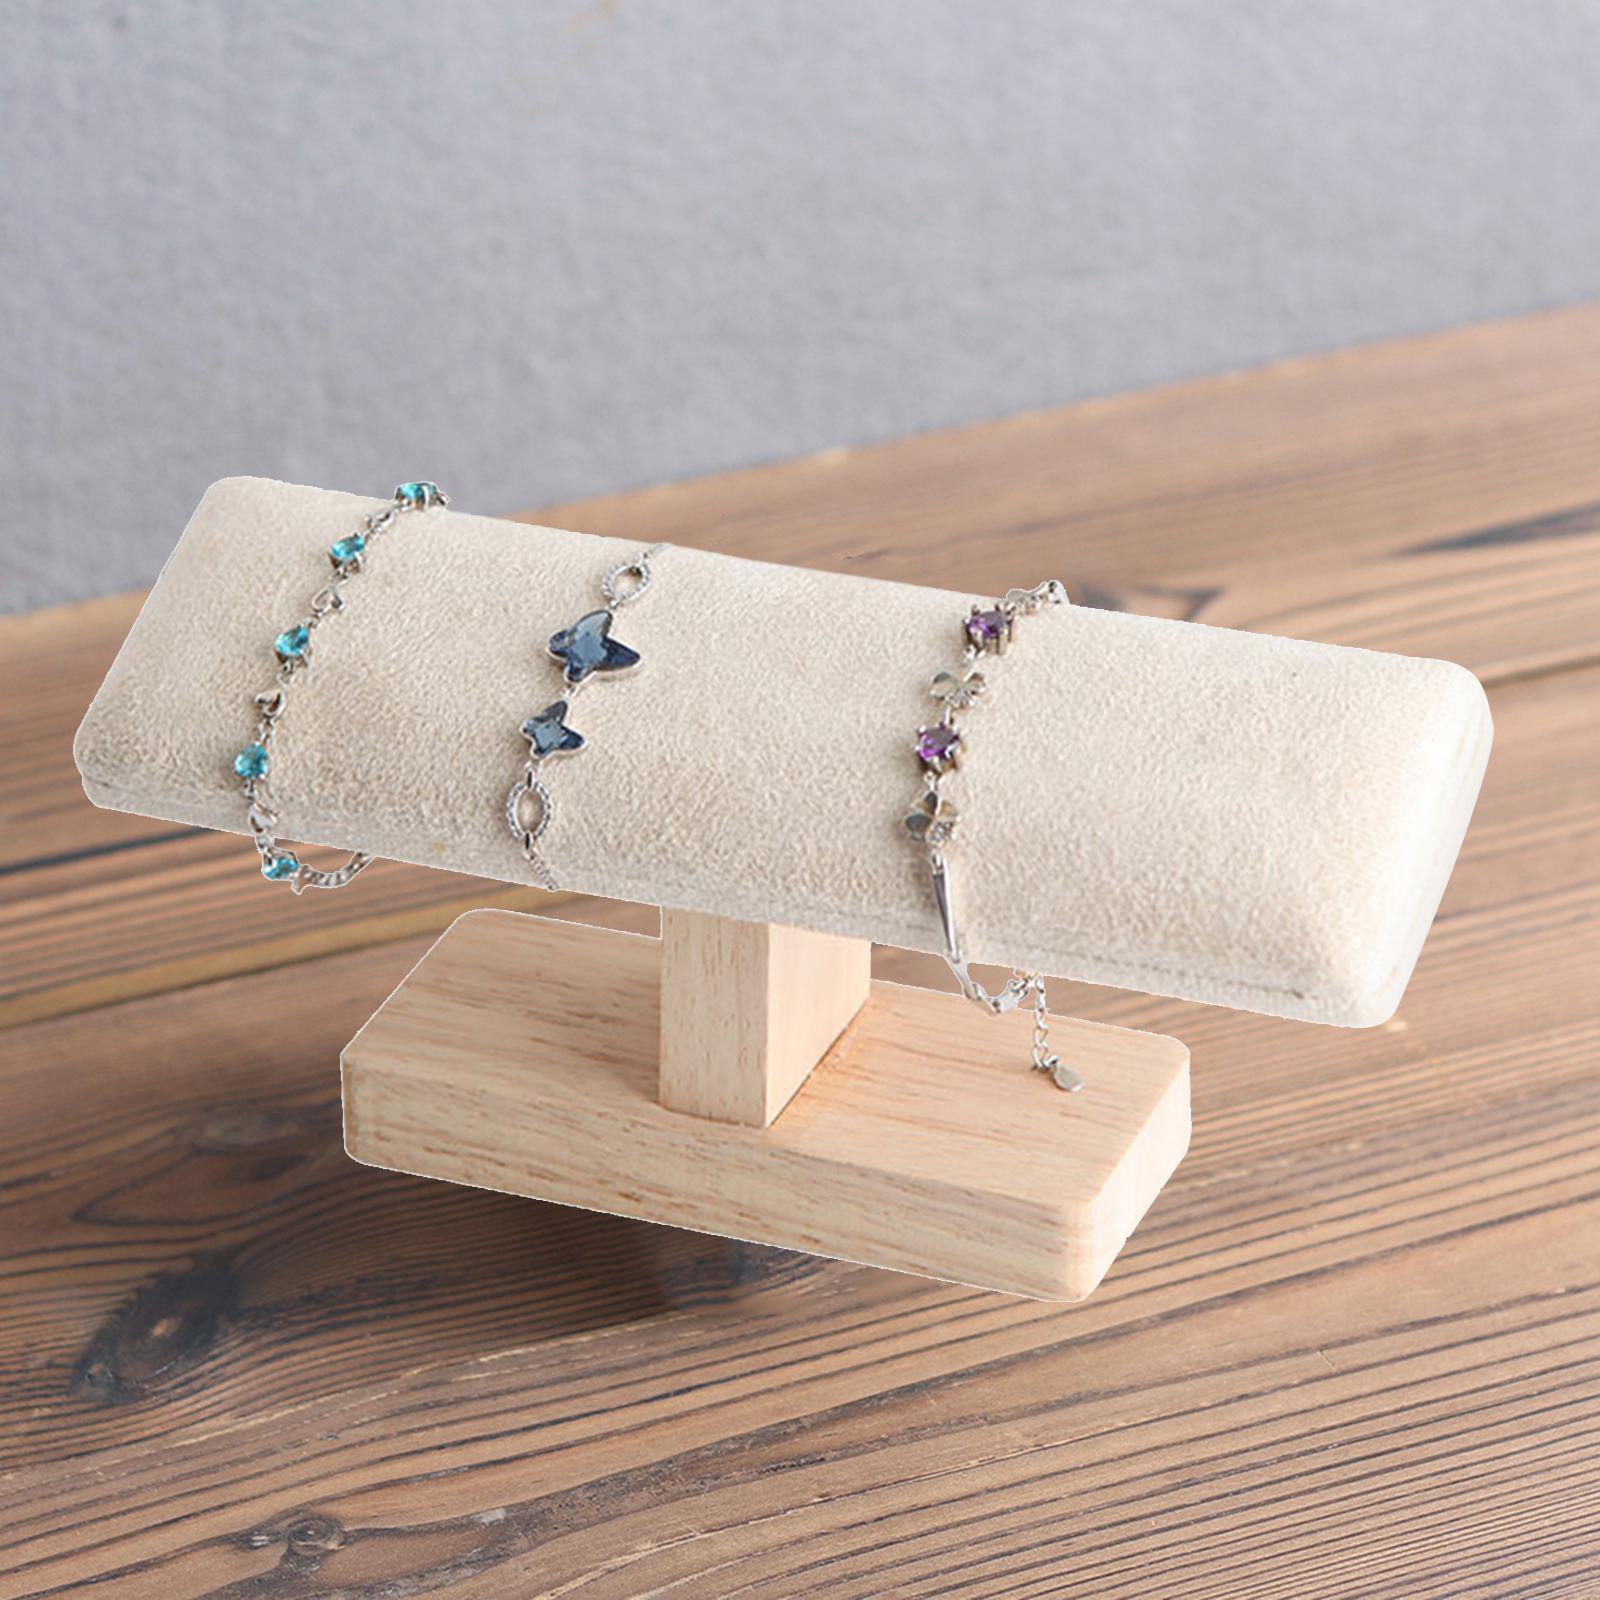 DIY Wooden Bracelet Holder